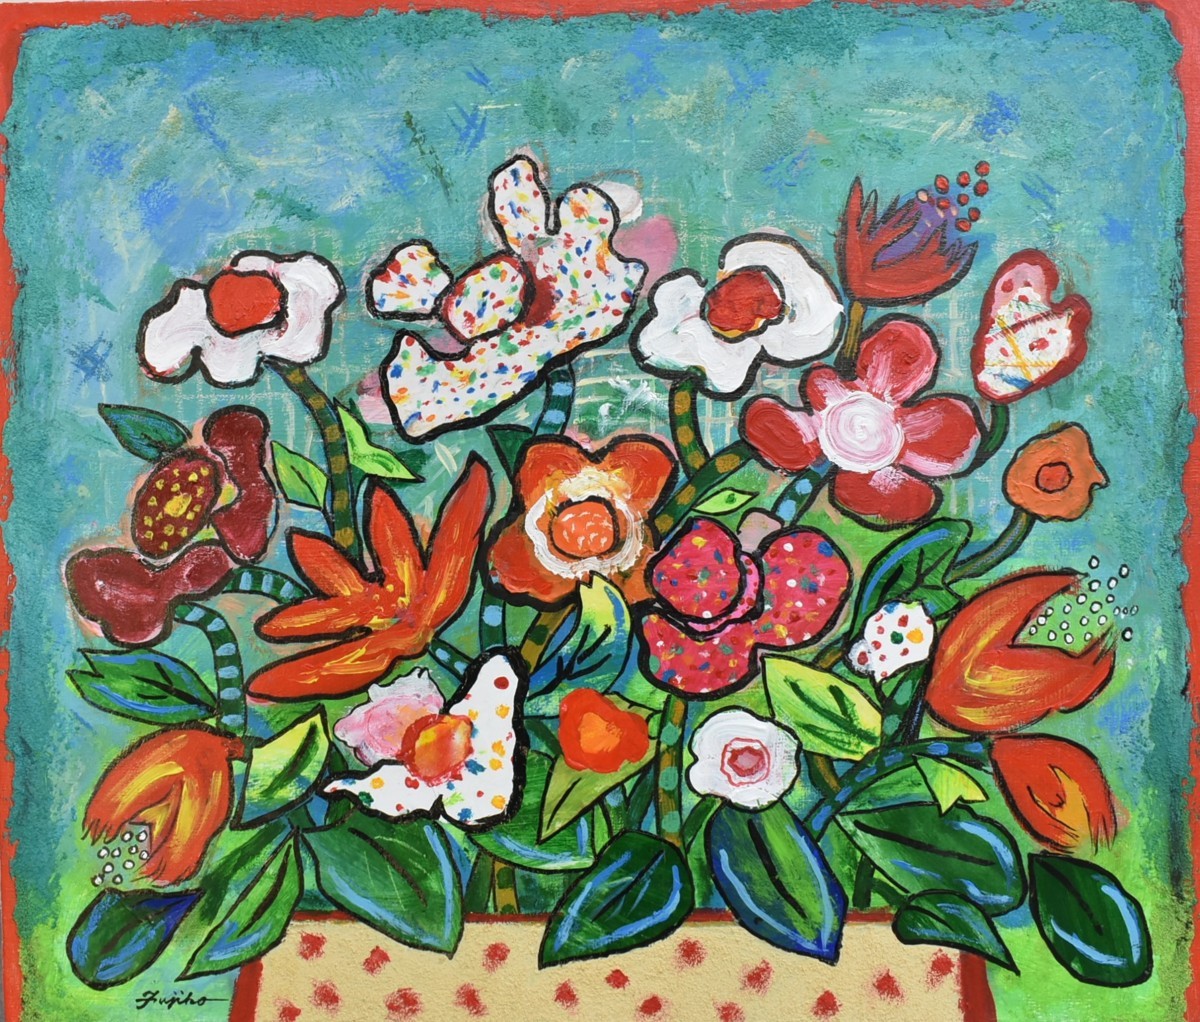 لوحة زيتية جديدة للفنان الشهير فوجيكو شيراي, رقم 10 زهور الولائم [معرض مسامي], تلوين, طلاء زيتي, باق على قيد الحياة